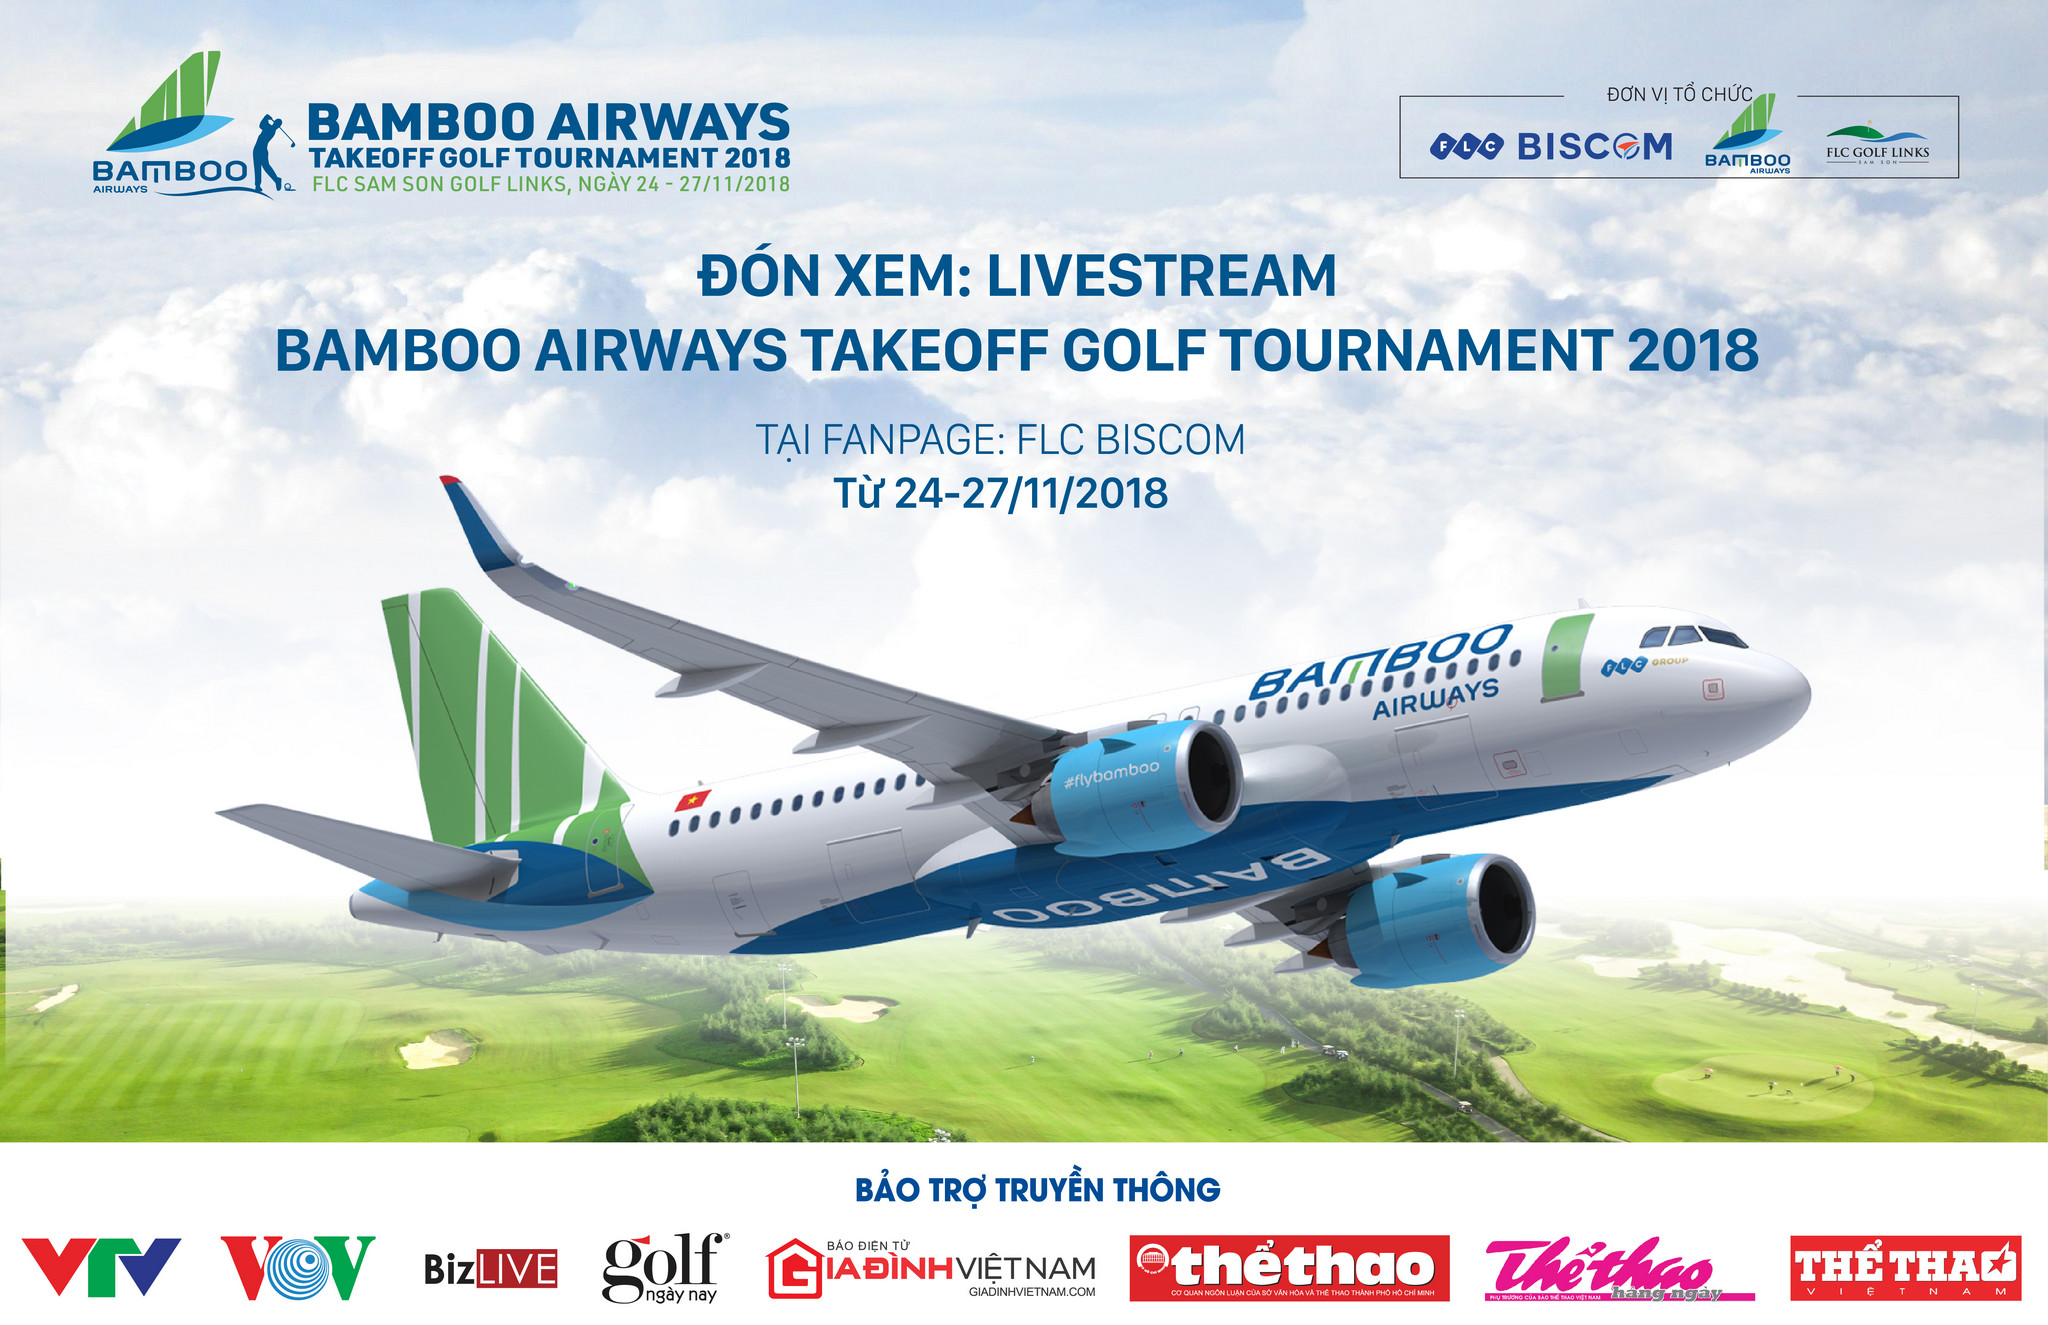 Bamboo Airways Takeoff Golf Tournament 2018: Giải đấu của những cái nhất